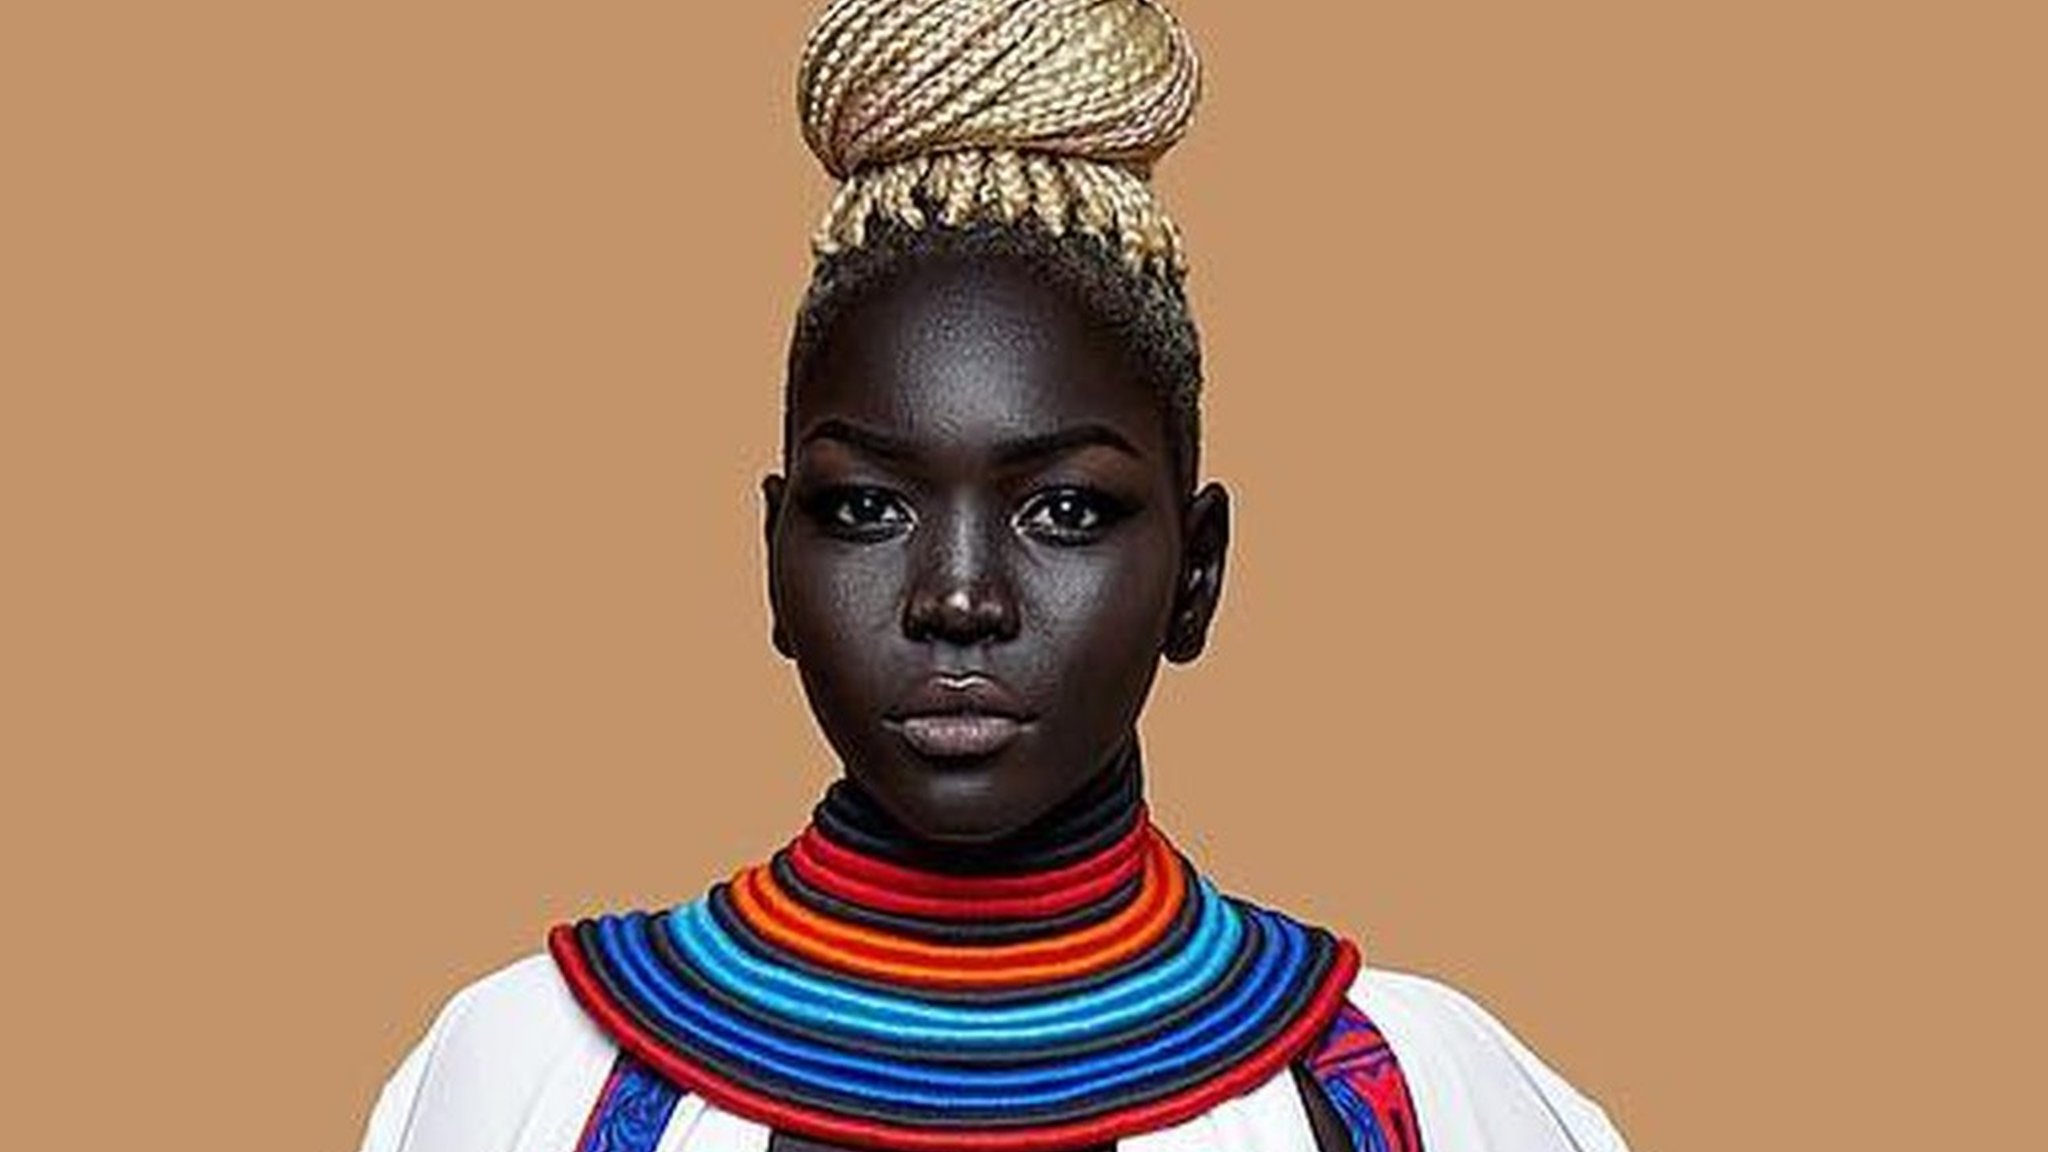 Nyakim gatwech dis african model dey shake fashion world wit her dark skin